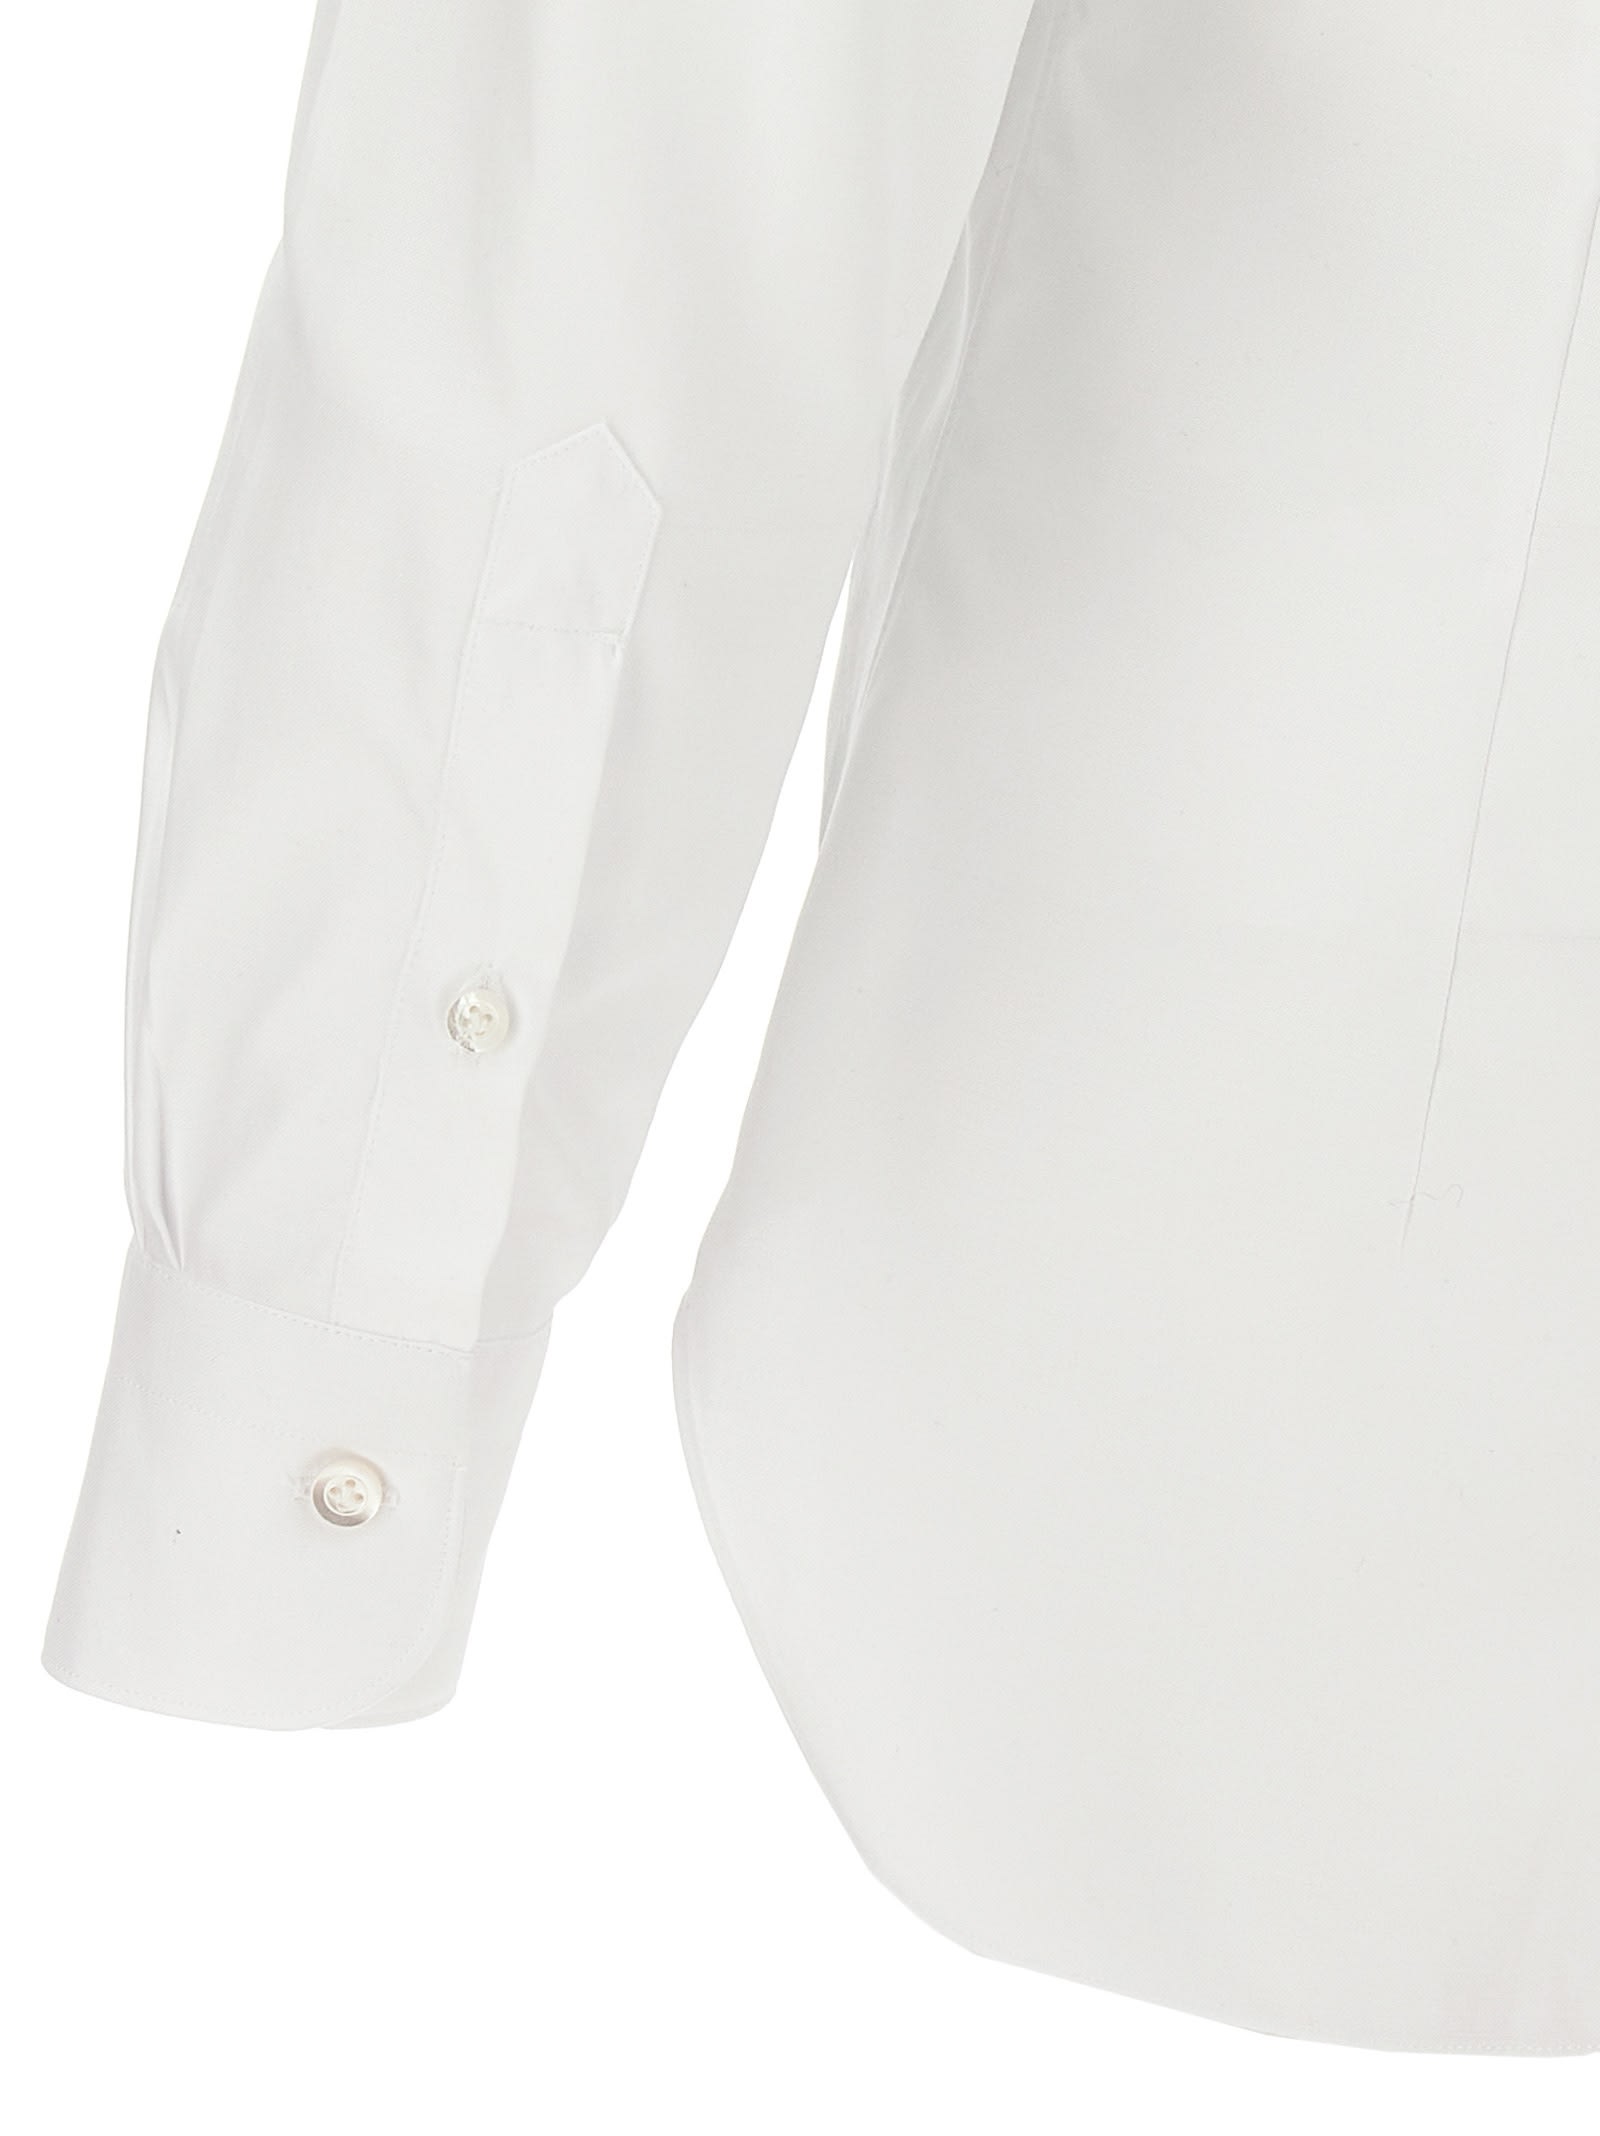 Shop Barba Napoli Textured Cotton Shirt In White